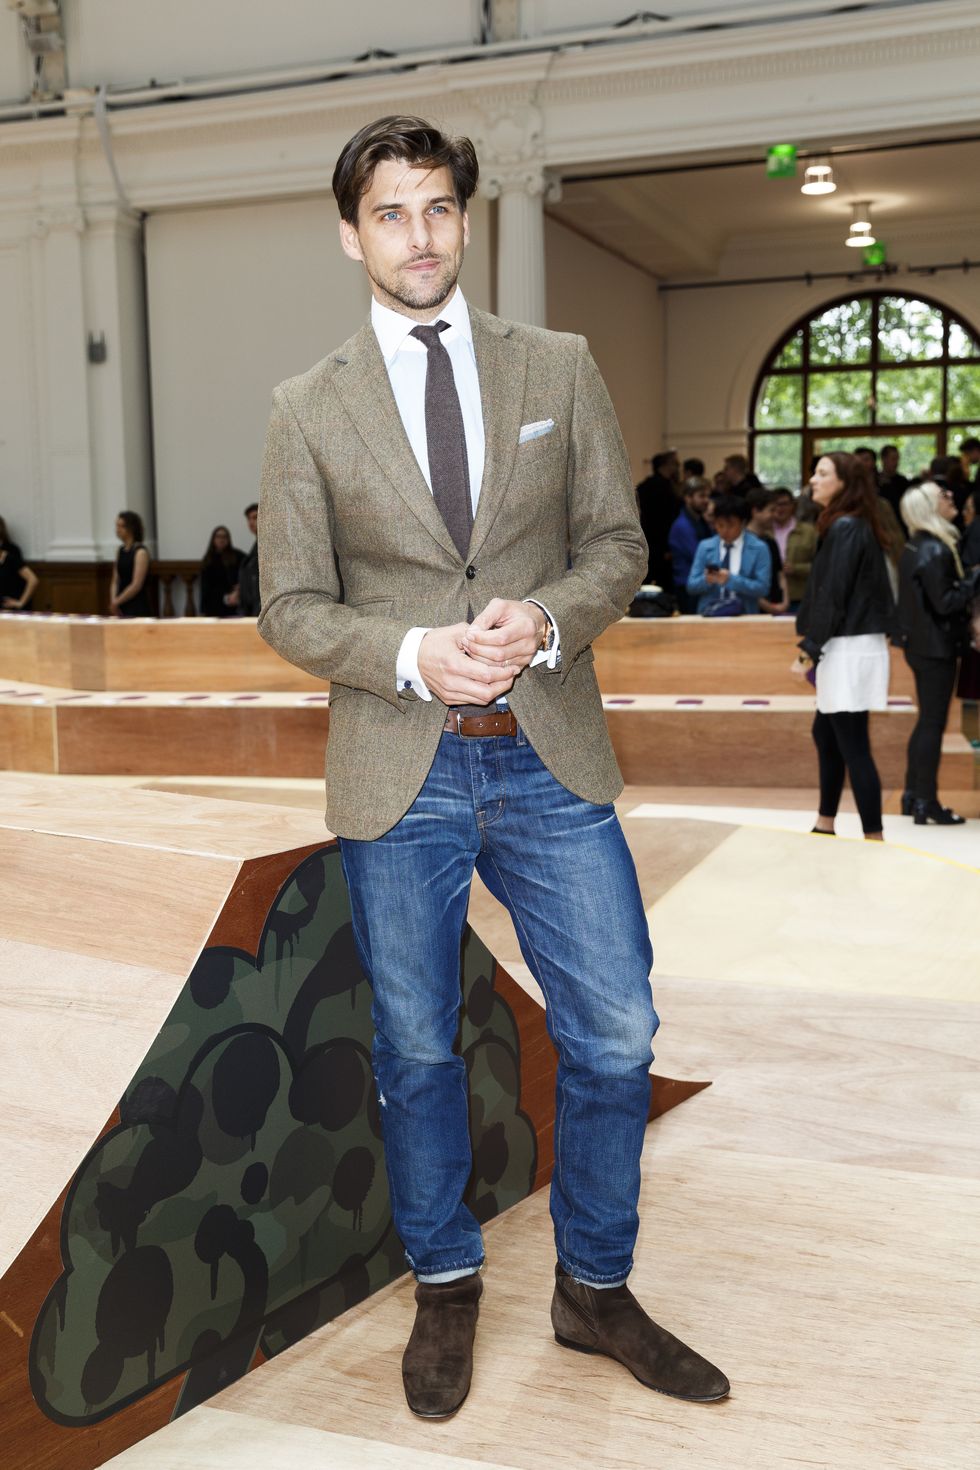 <p>德國男模Johannes Huebl以大地色系的正式西裝配上牛仔褲，看起來既classic又不失時尚風格，是相當獨到的搭配方式。</p>